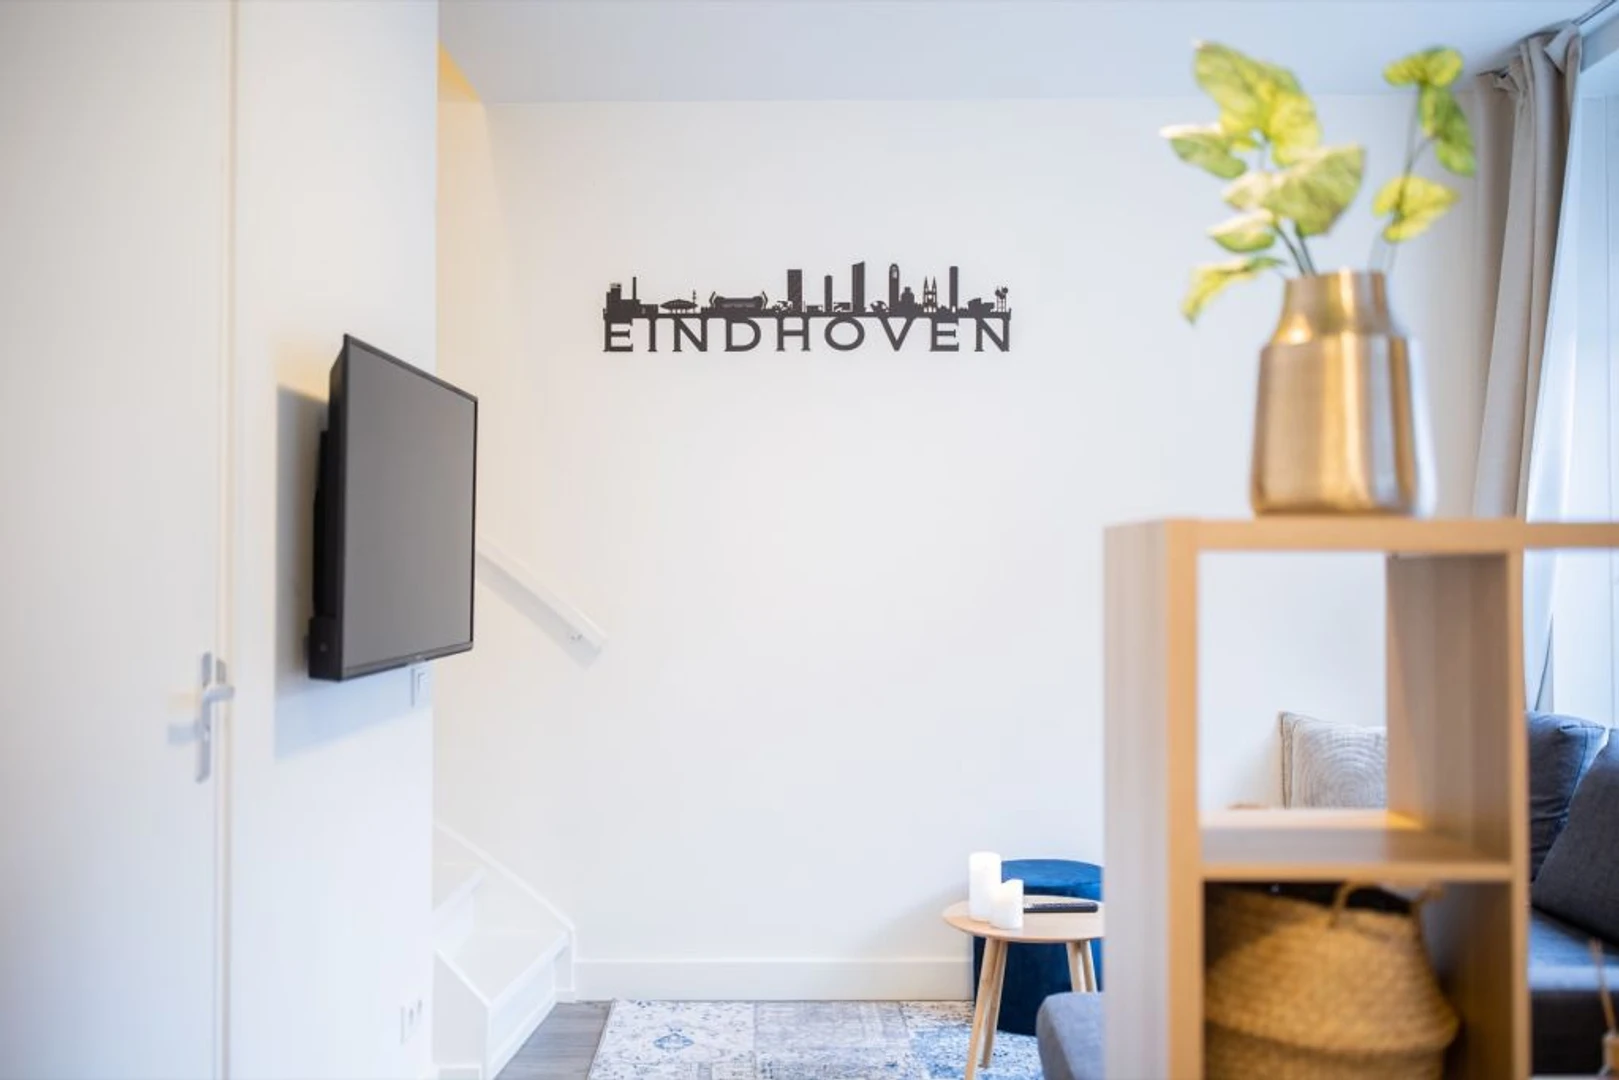 Apartamento moderno y luminoso en Eindhoven